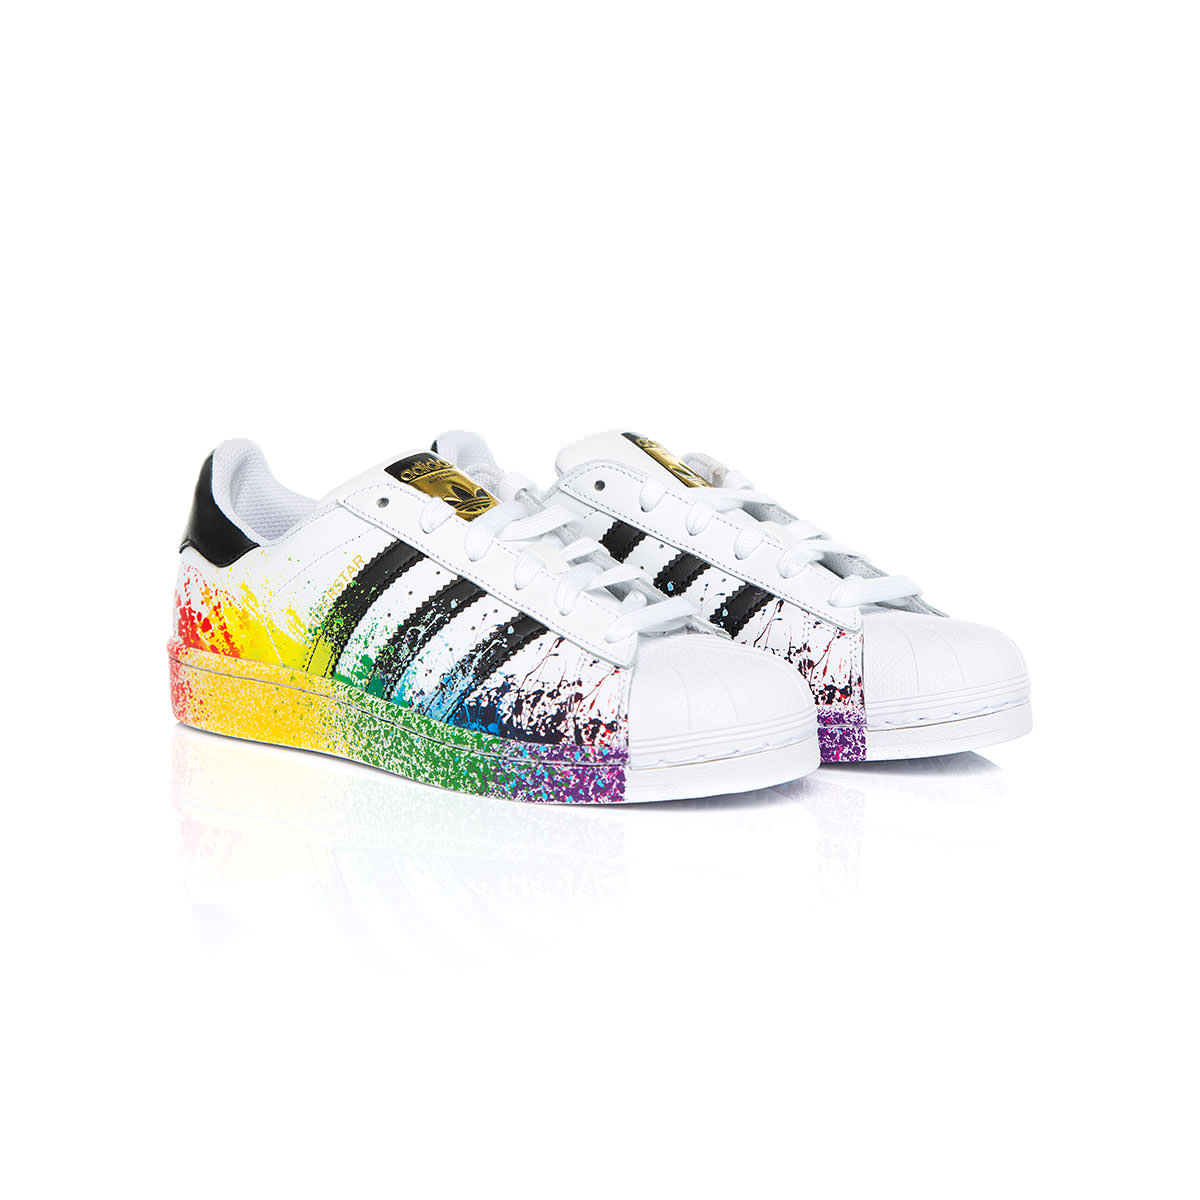 Liever Ontkennen Permanent adidas Superstar Rainbow Shoesadidas Superstar Rainbow Shoes - OFour